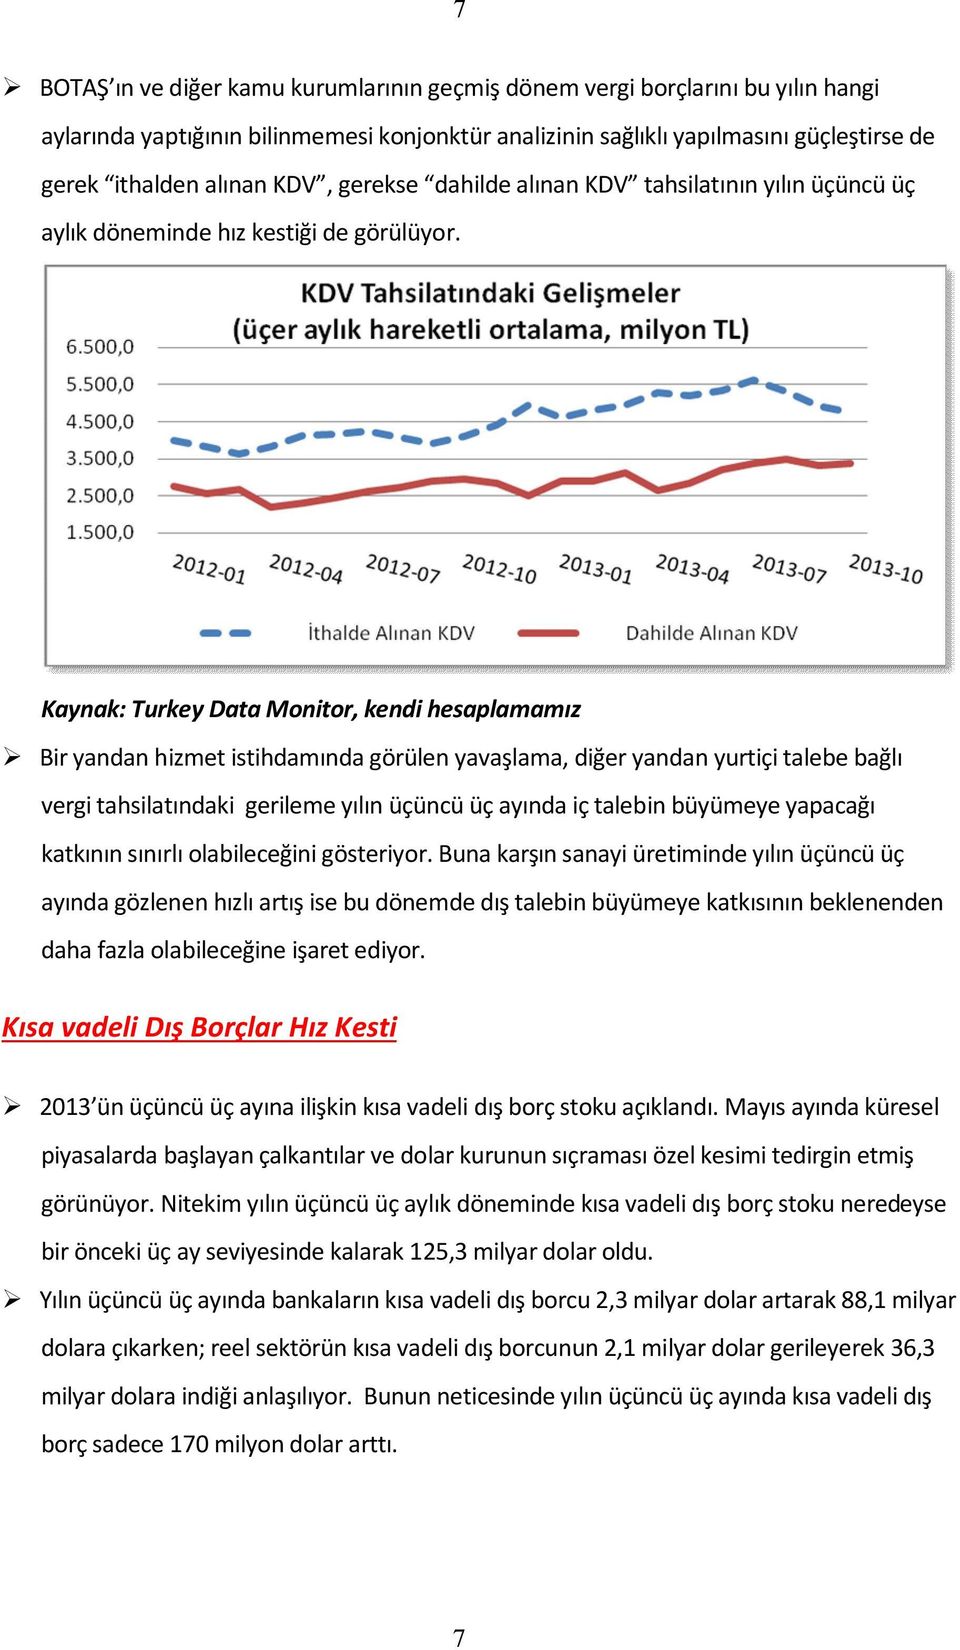 Kaynak: Turkey Data Monitor, kendi hesaplamamız Bir yandan hizmet istihdamında görülen yavaşlama, diğer yandan yurtiçi talebe bağlı vergi tahsilatındaki gerileme yılın üçüncü üç ayında iç talebin